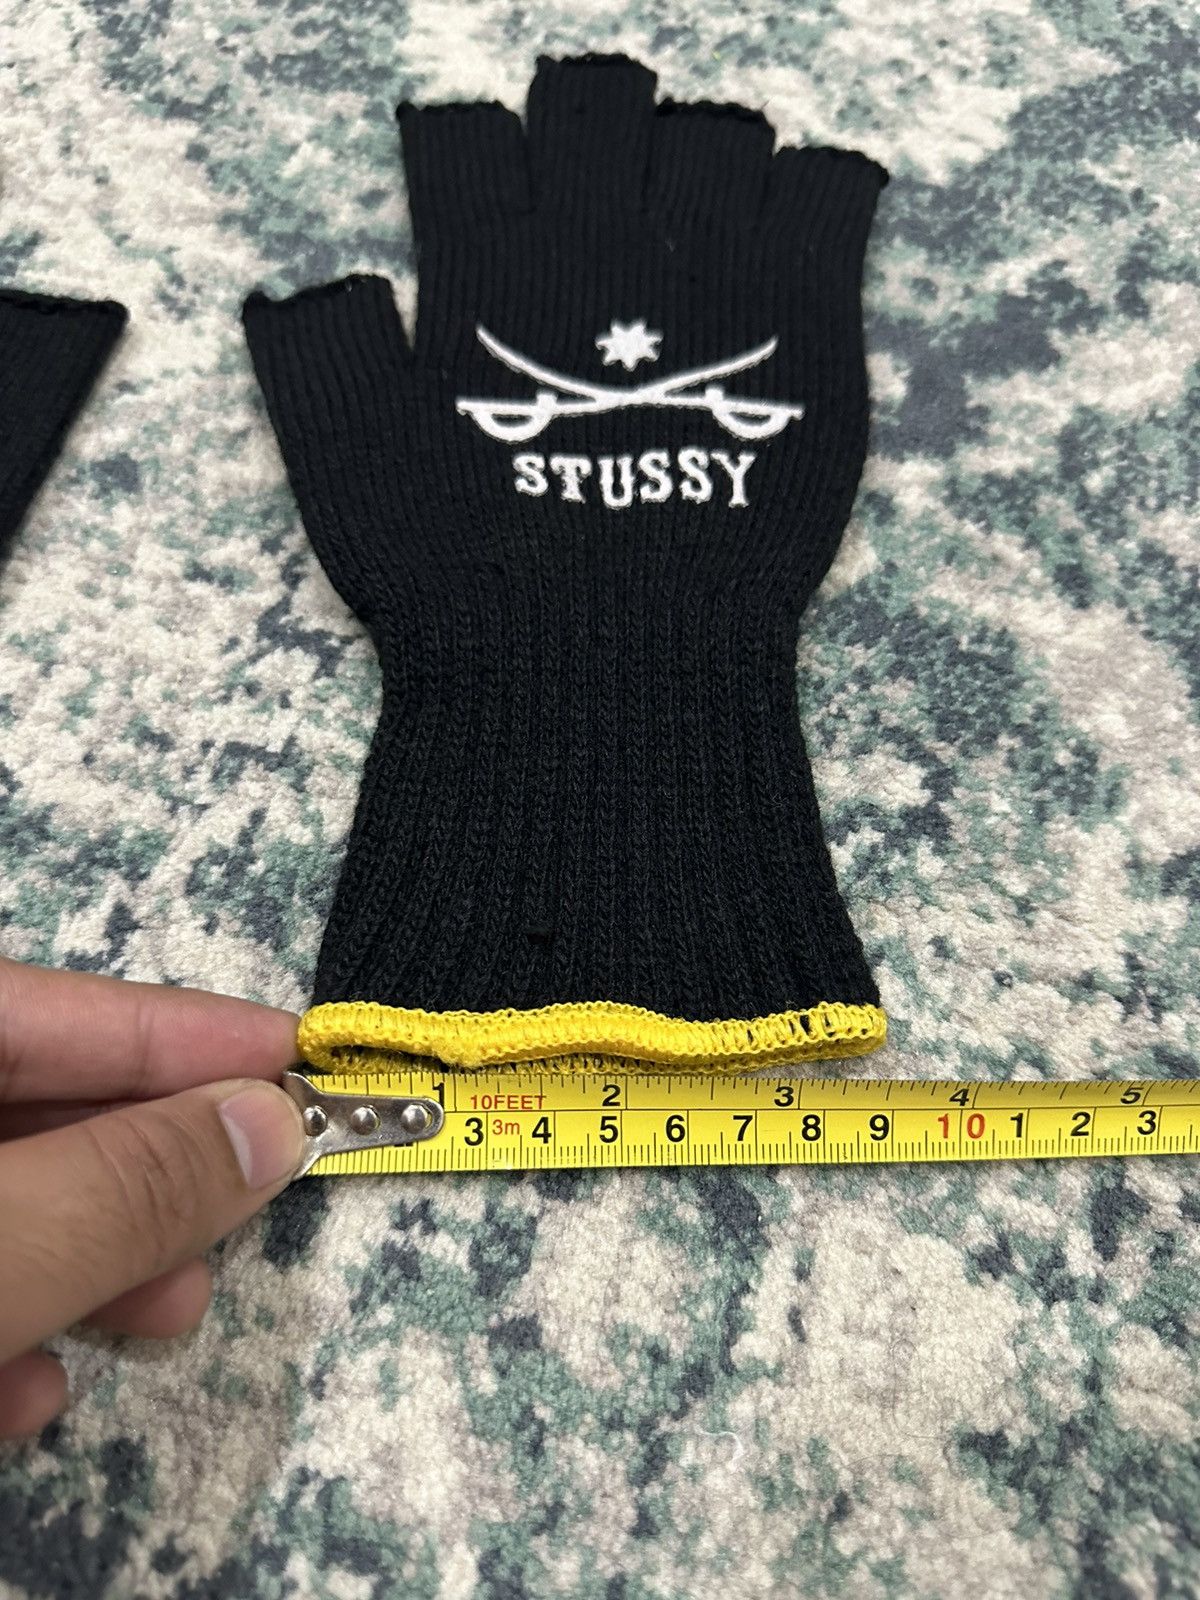 Stussy Sword Fingerless Gloves Black Yellow (Japan Only) - 6